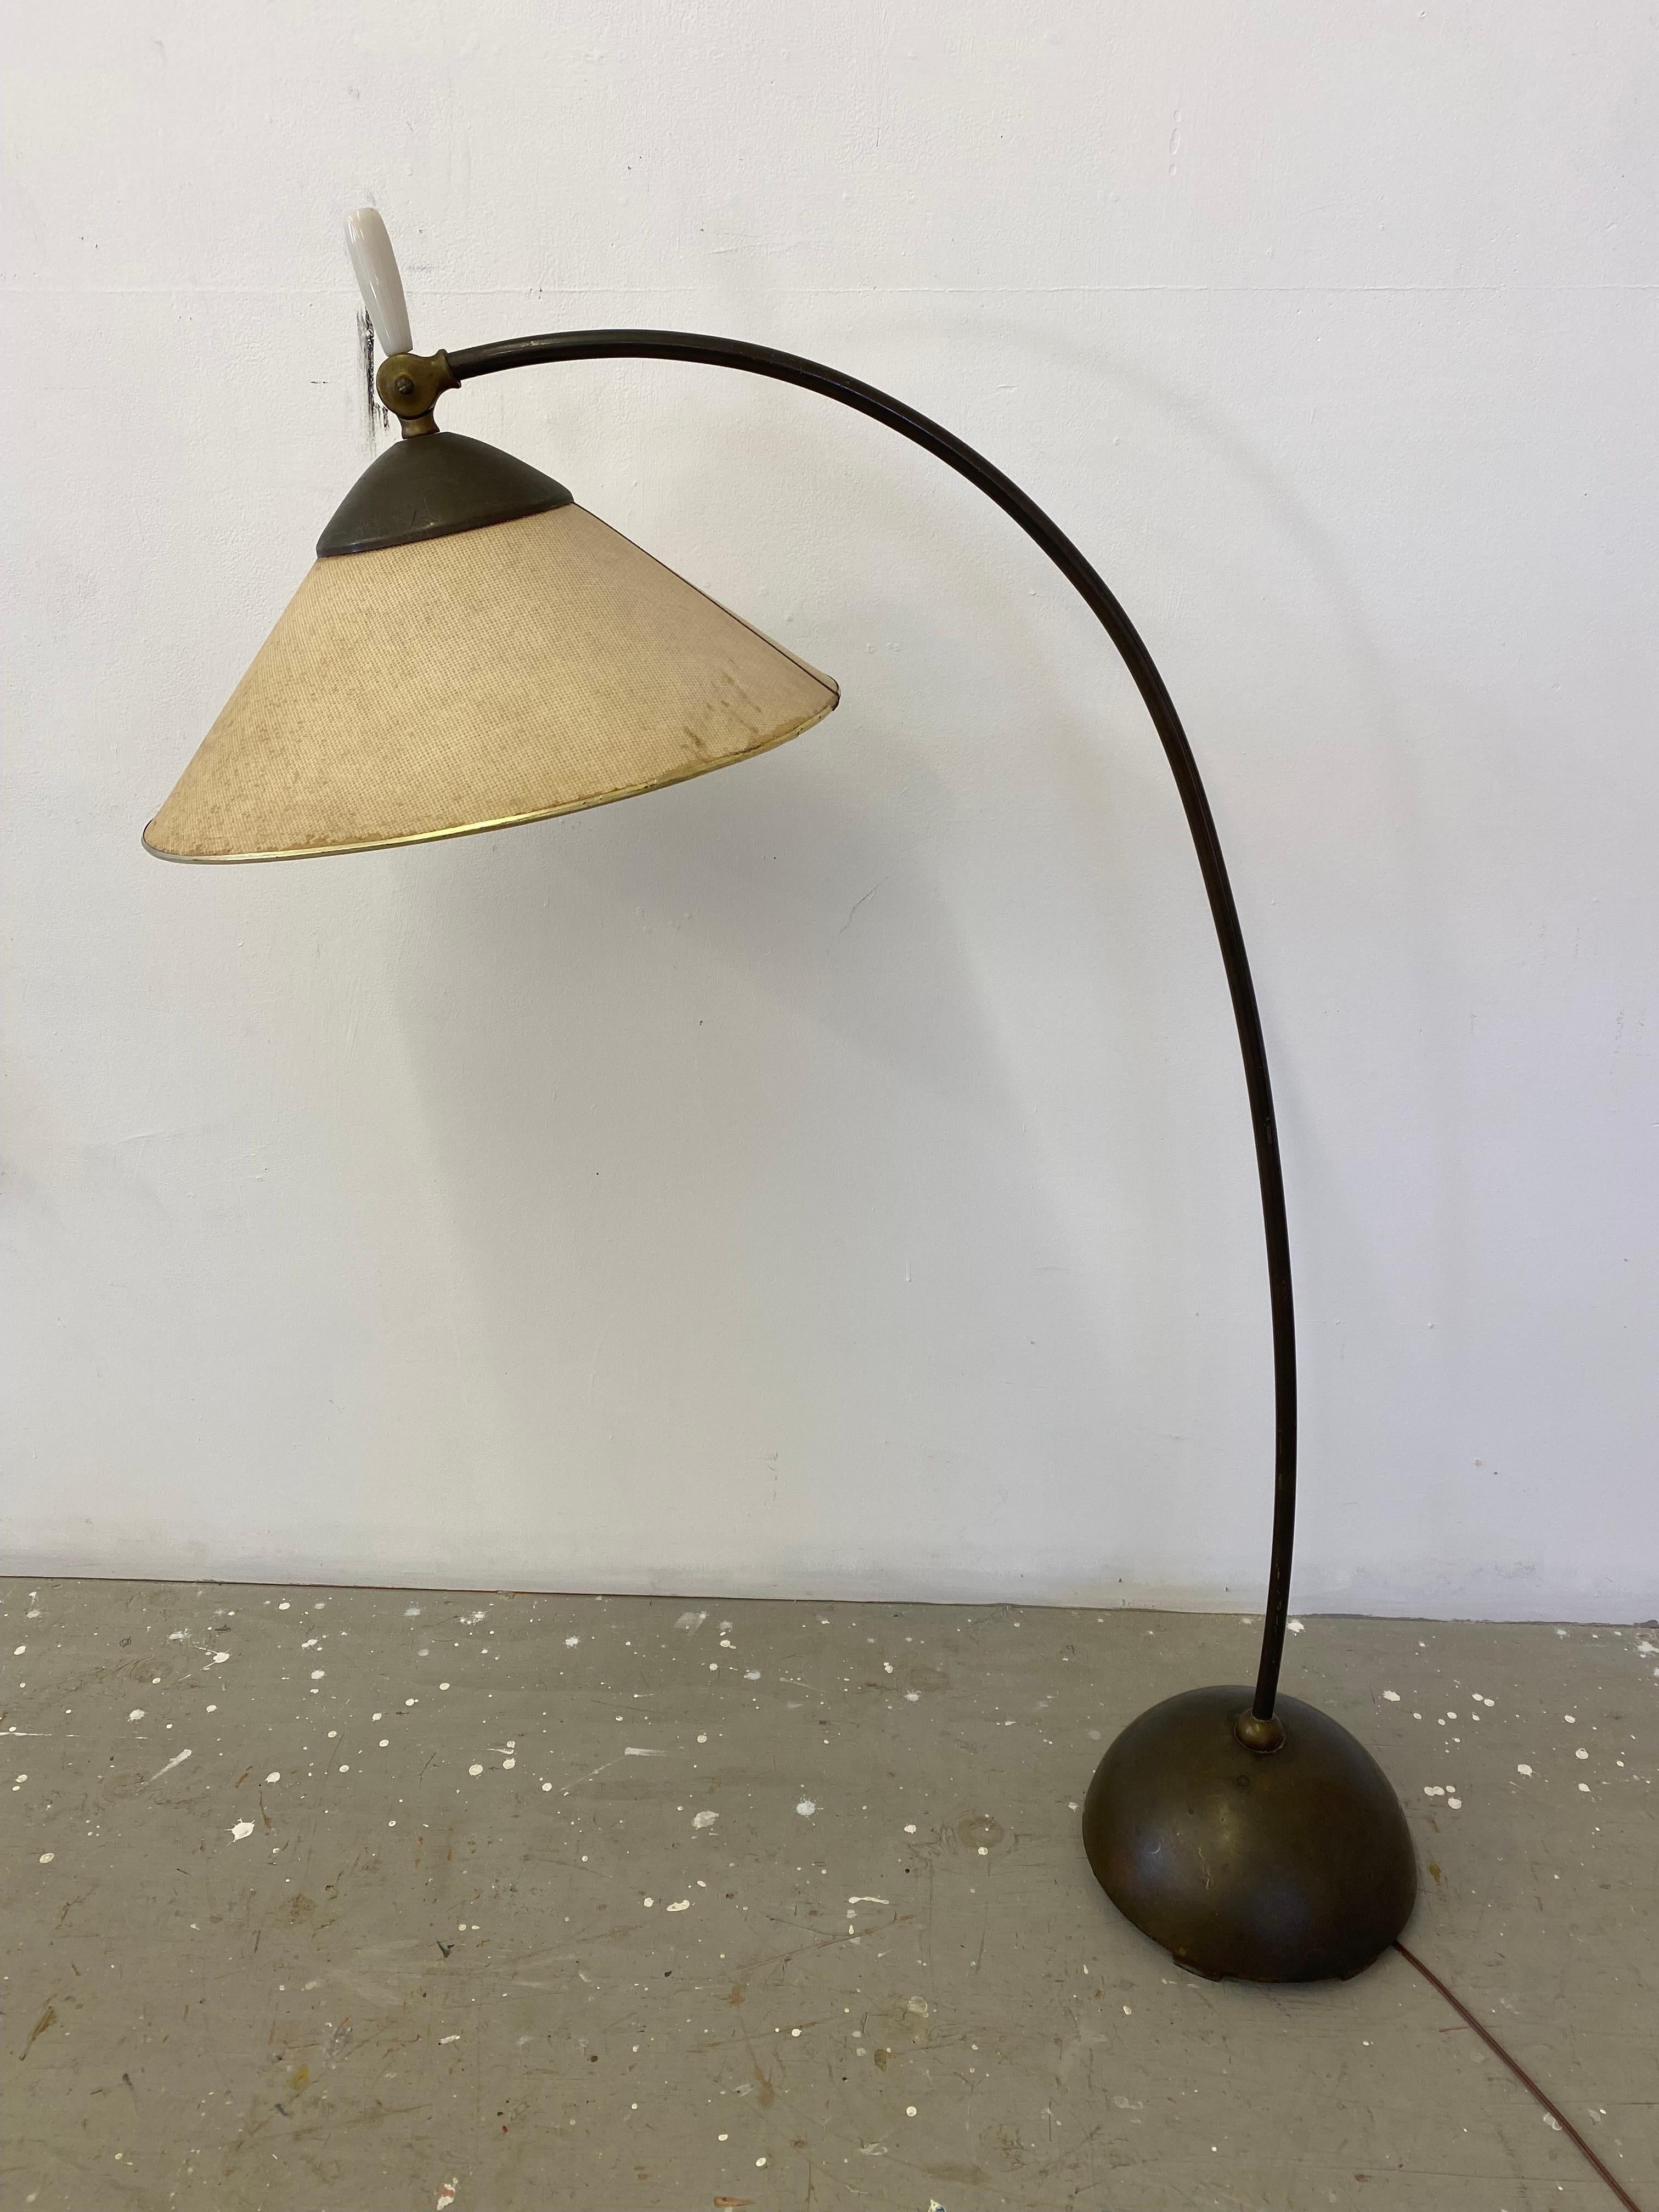 Drehbare Stehleuchte von Russel Wright für Fairmont Lamp Company, um 1954. Erstaunlich originelles Beispiel! Original Glasfaserschirm, Originalfarbe und Patina auf Messing! Die Lampe lässt sich in eine Vielzahl von Positionen bewegen, um das Licht